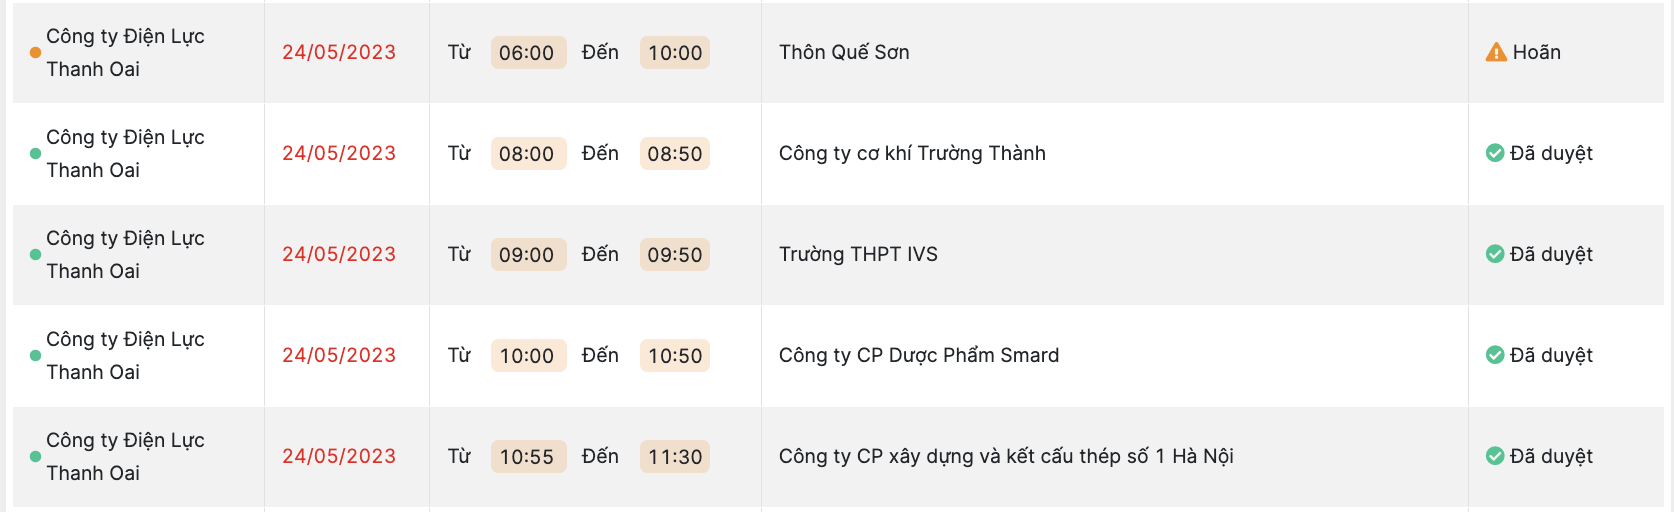 Lịch cắt điện tại Hà Nội ngày 23 và 24.5